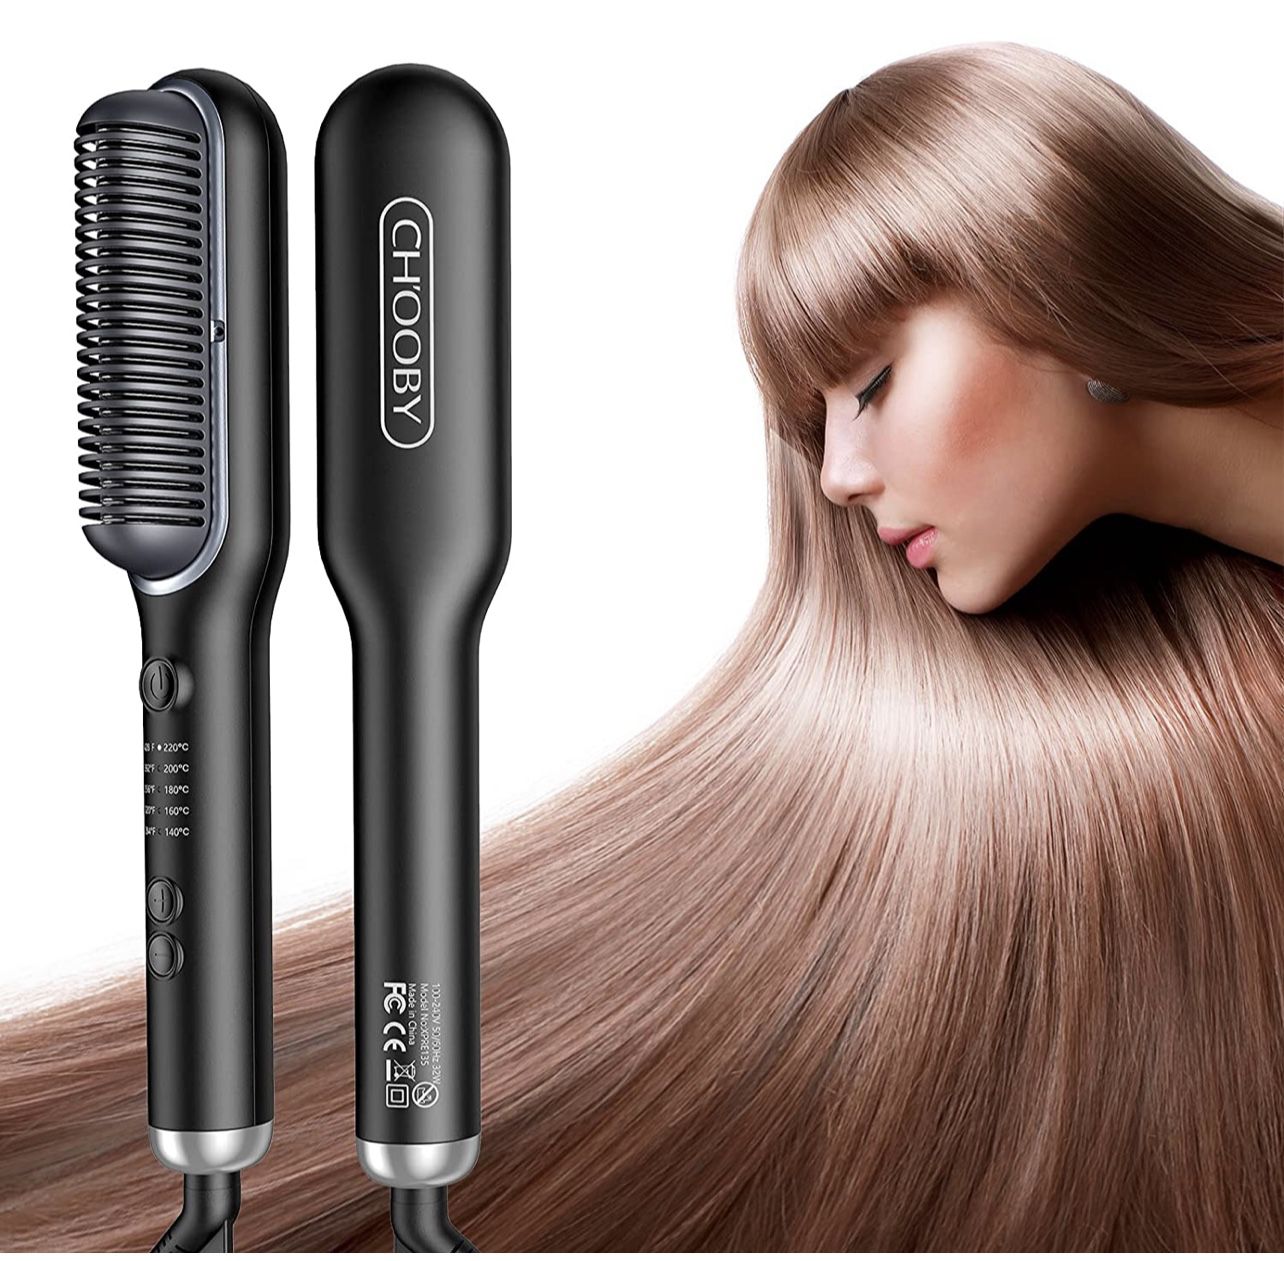 Hair Straightener Brush, Anion Straightening Brush, CHOOBY Hair Straightening Iron with Built-in Comb, 30s Fast Heating & 5 Temp Settings & Anti-Scald